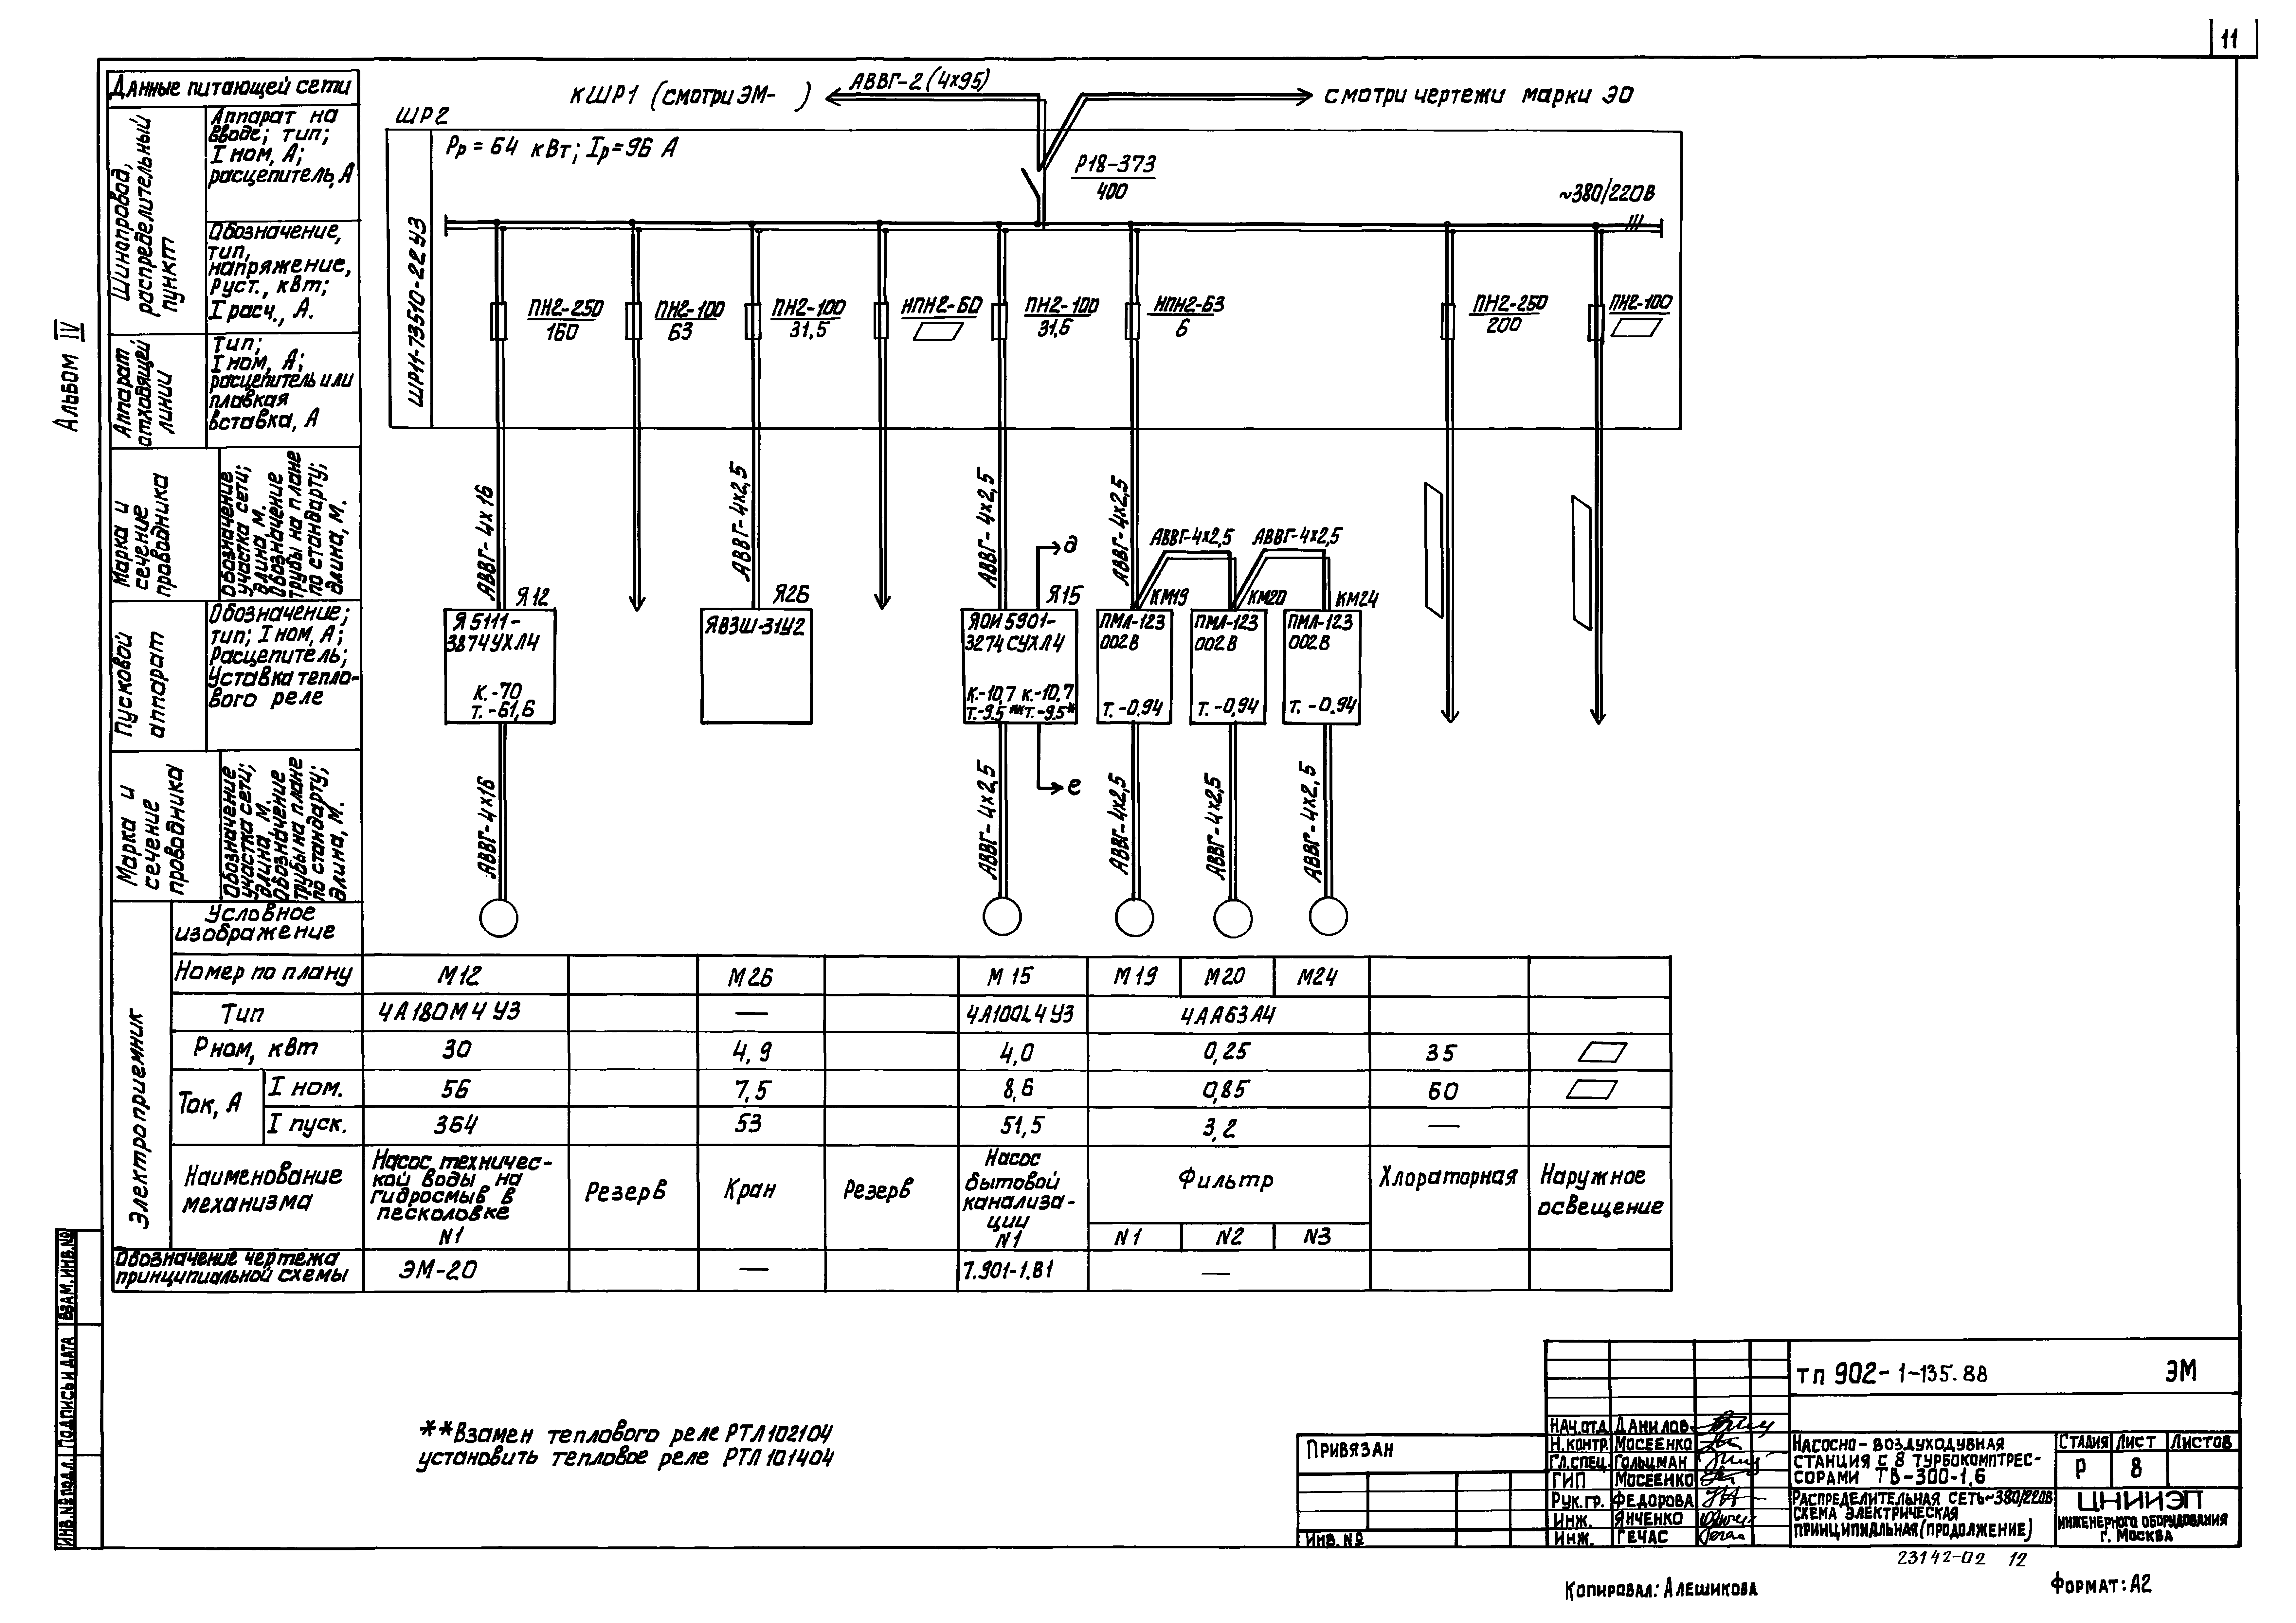 Типовой проект 902-1-135.88